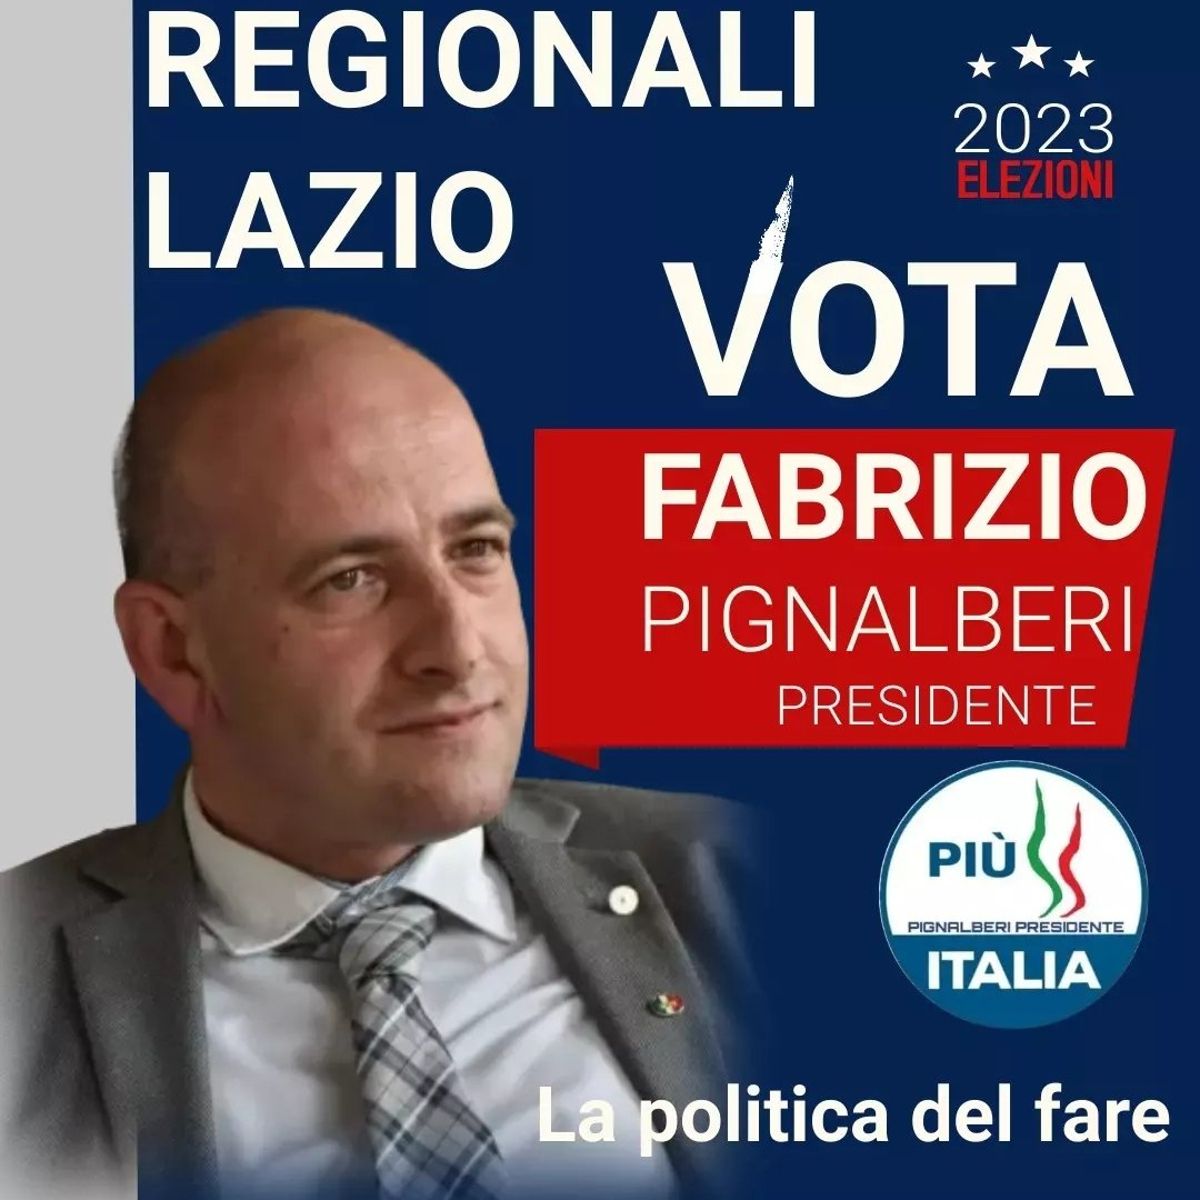 Fabrizio Pignalberi candidato alle Elezioni Regionali Lazio 2023